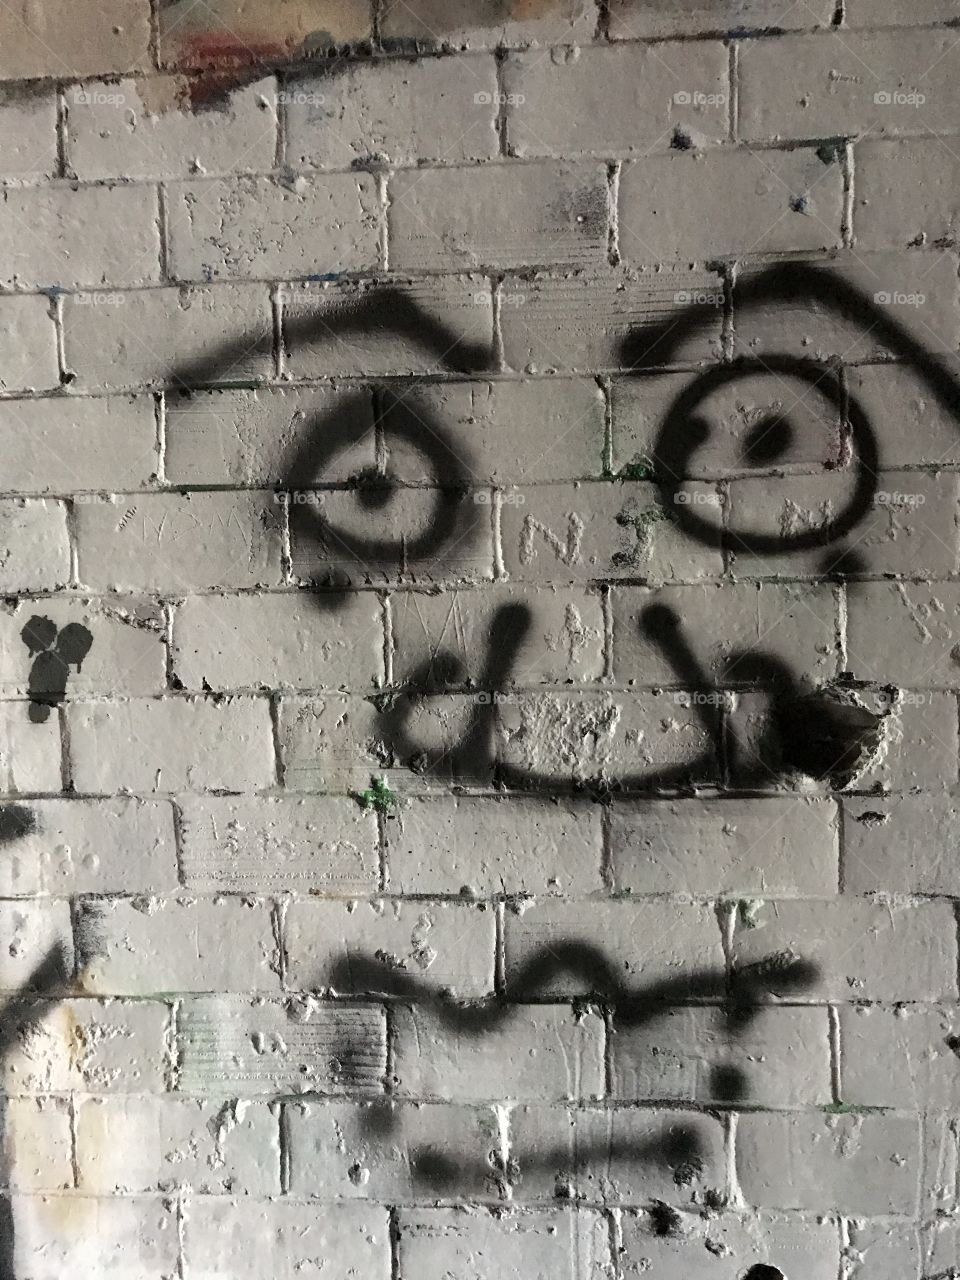 Graffiti in Fort Revere 